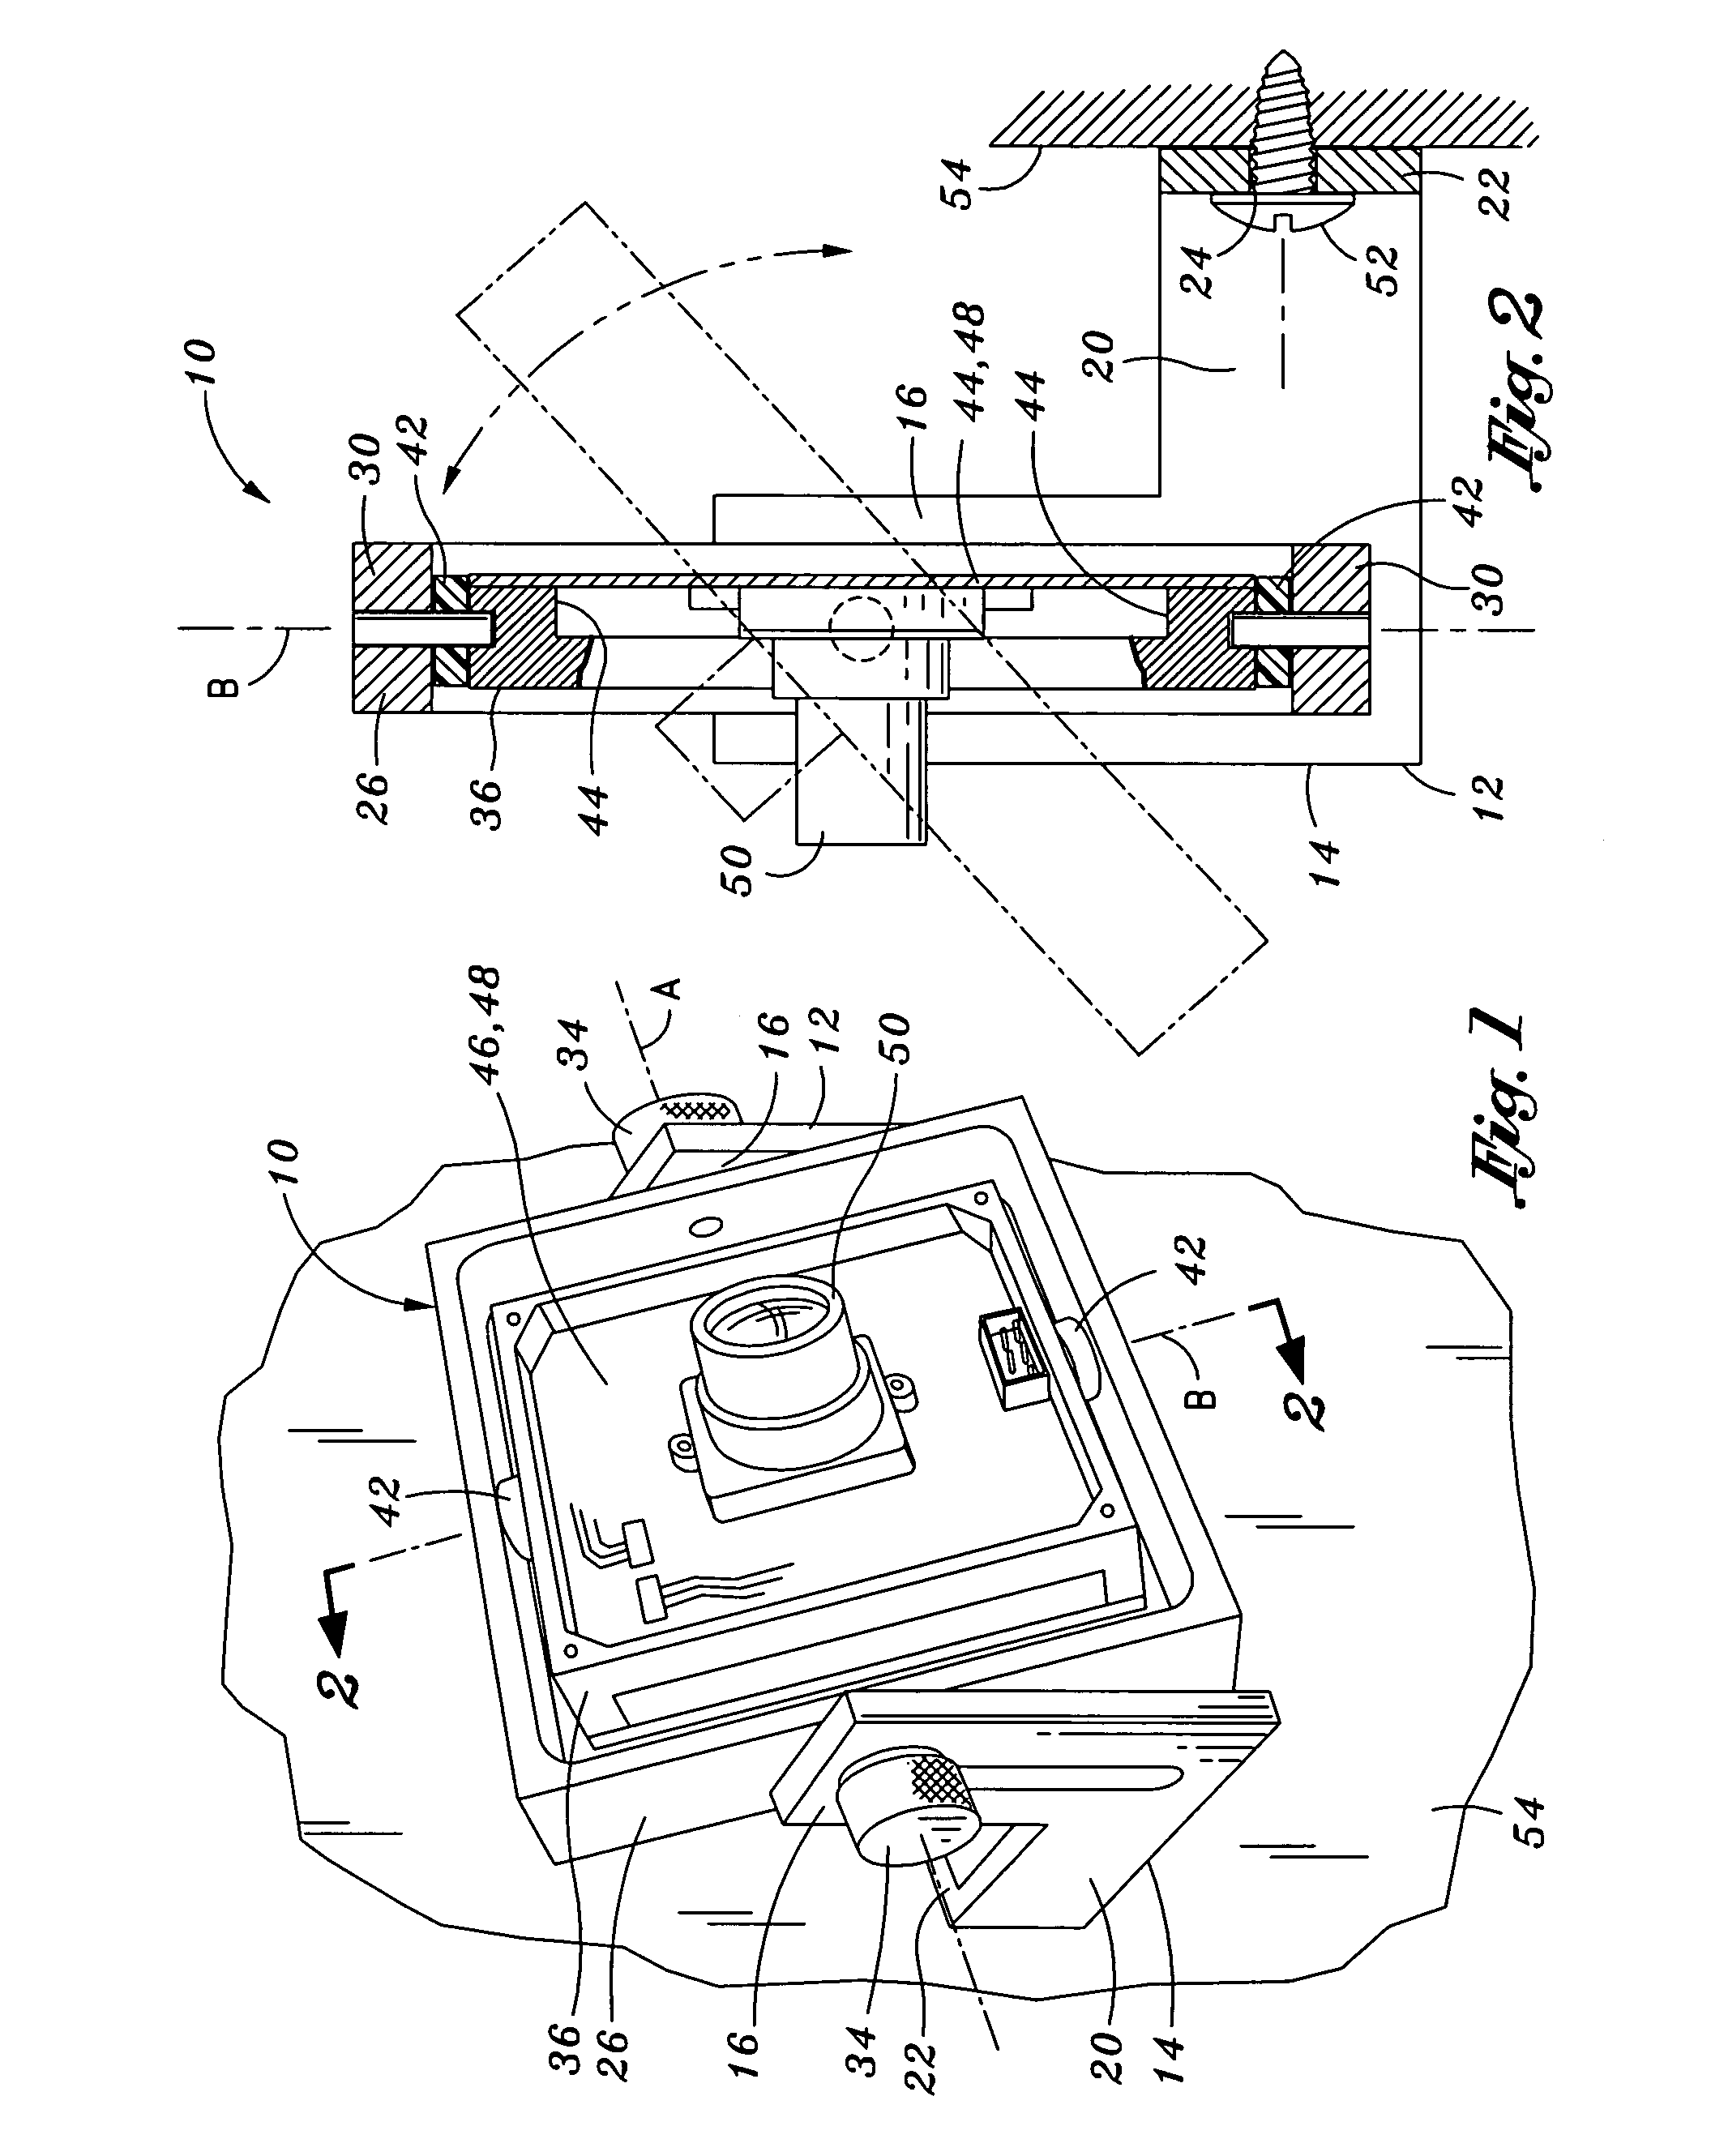 Gimbal mechanism